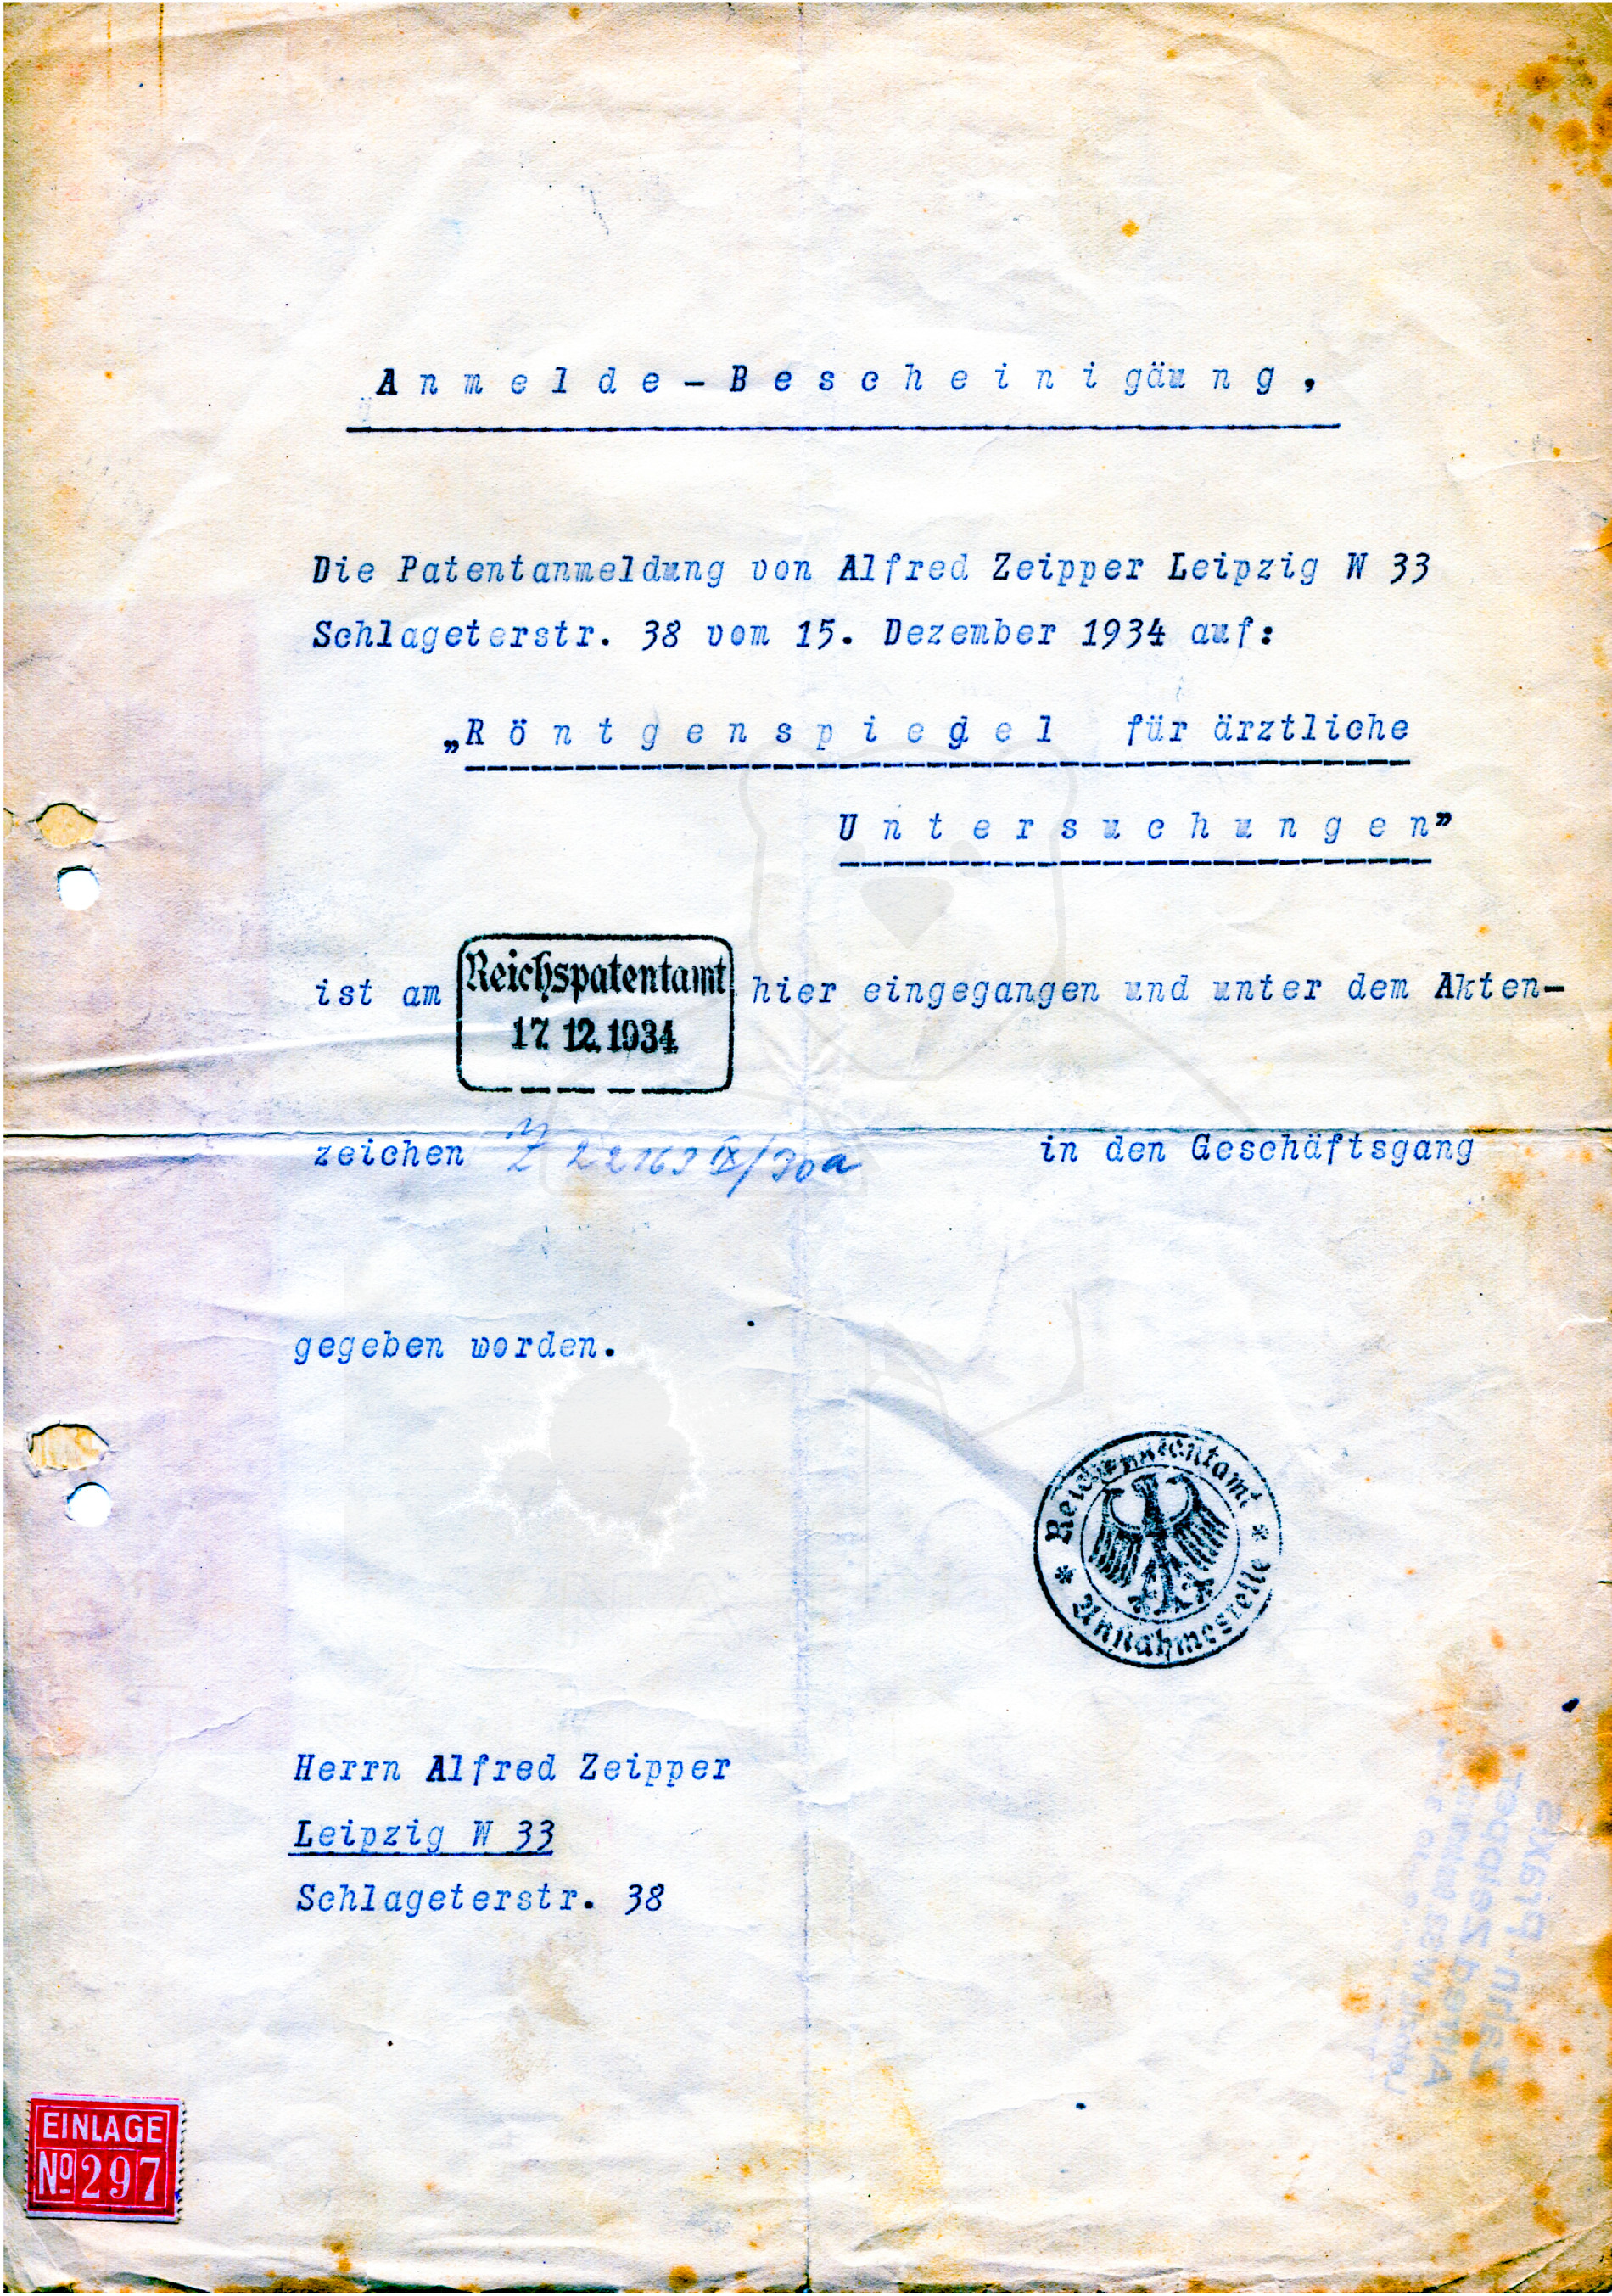 Röntgenspiegel Patentanmeldung Alfred Zeipper vom 17.12.1934 an das Reichspatentamt Leipzig, eingereicht von Alfred Zeipper (Scan von Thomas Zeipper)